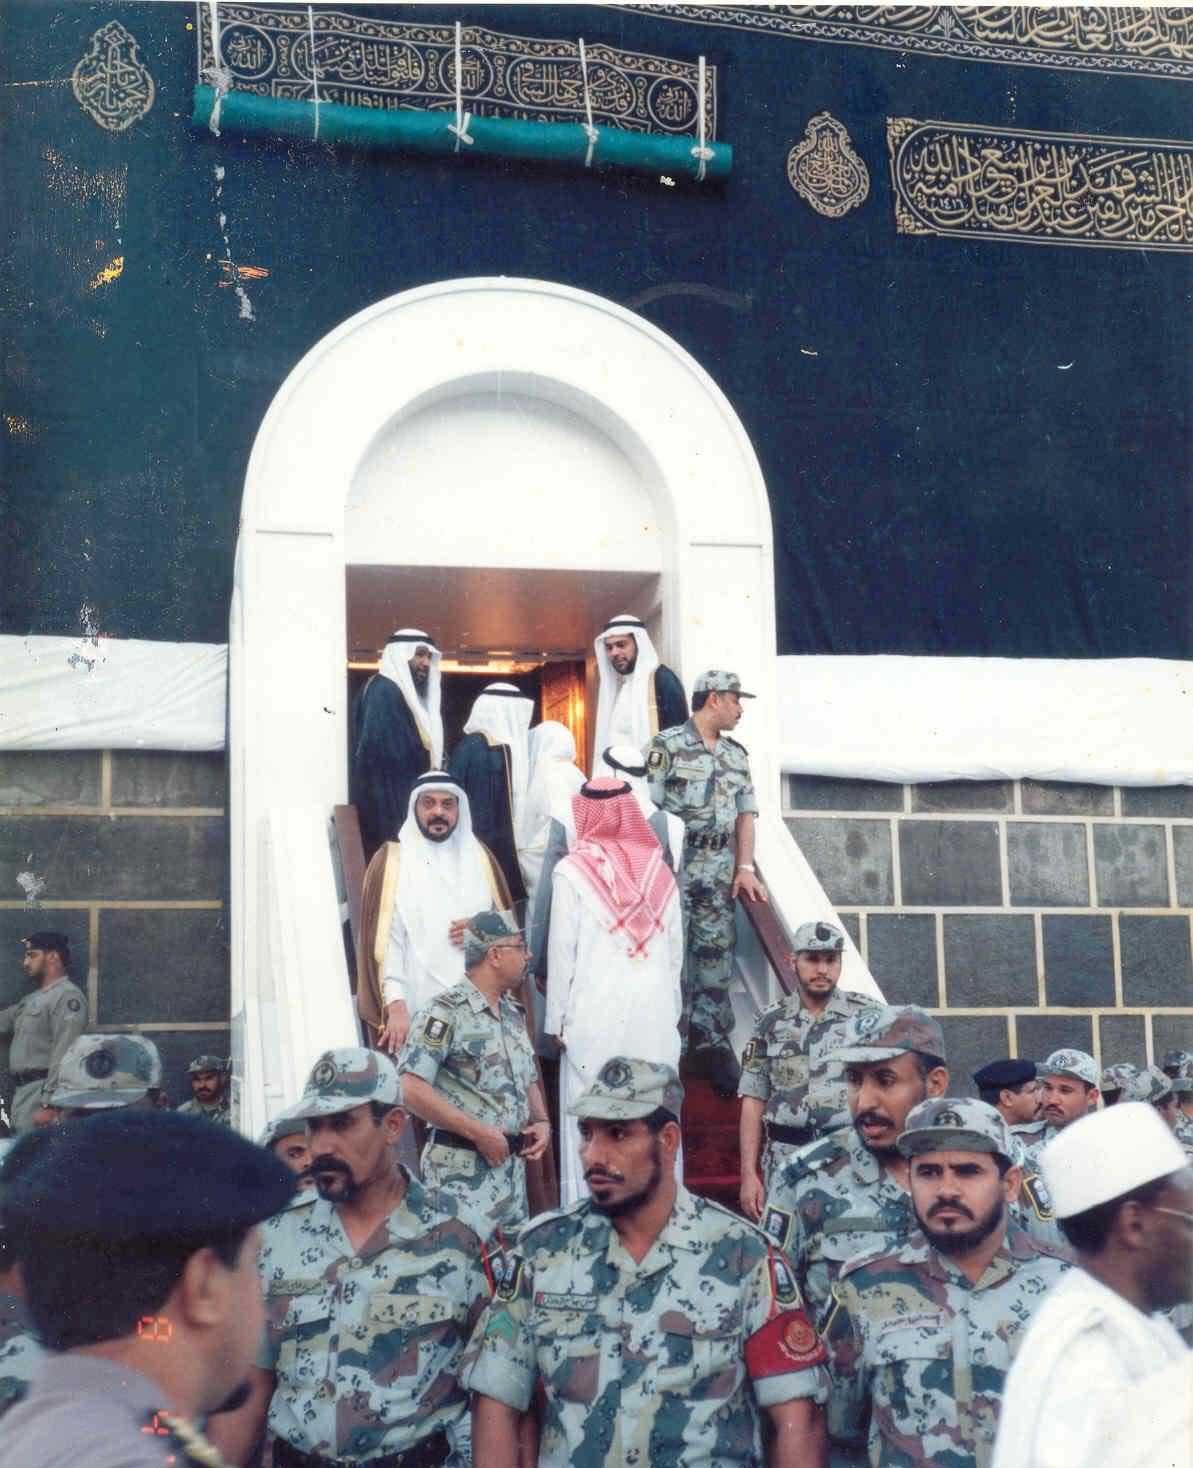 514tua 1 - [Pic]:Inside the Kaaba!!